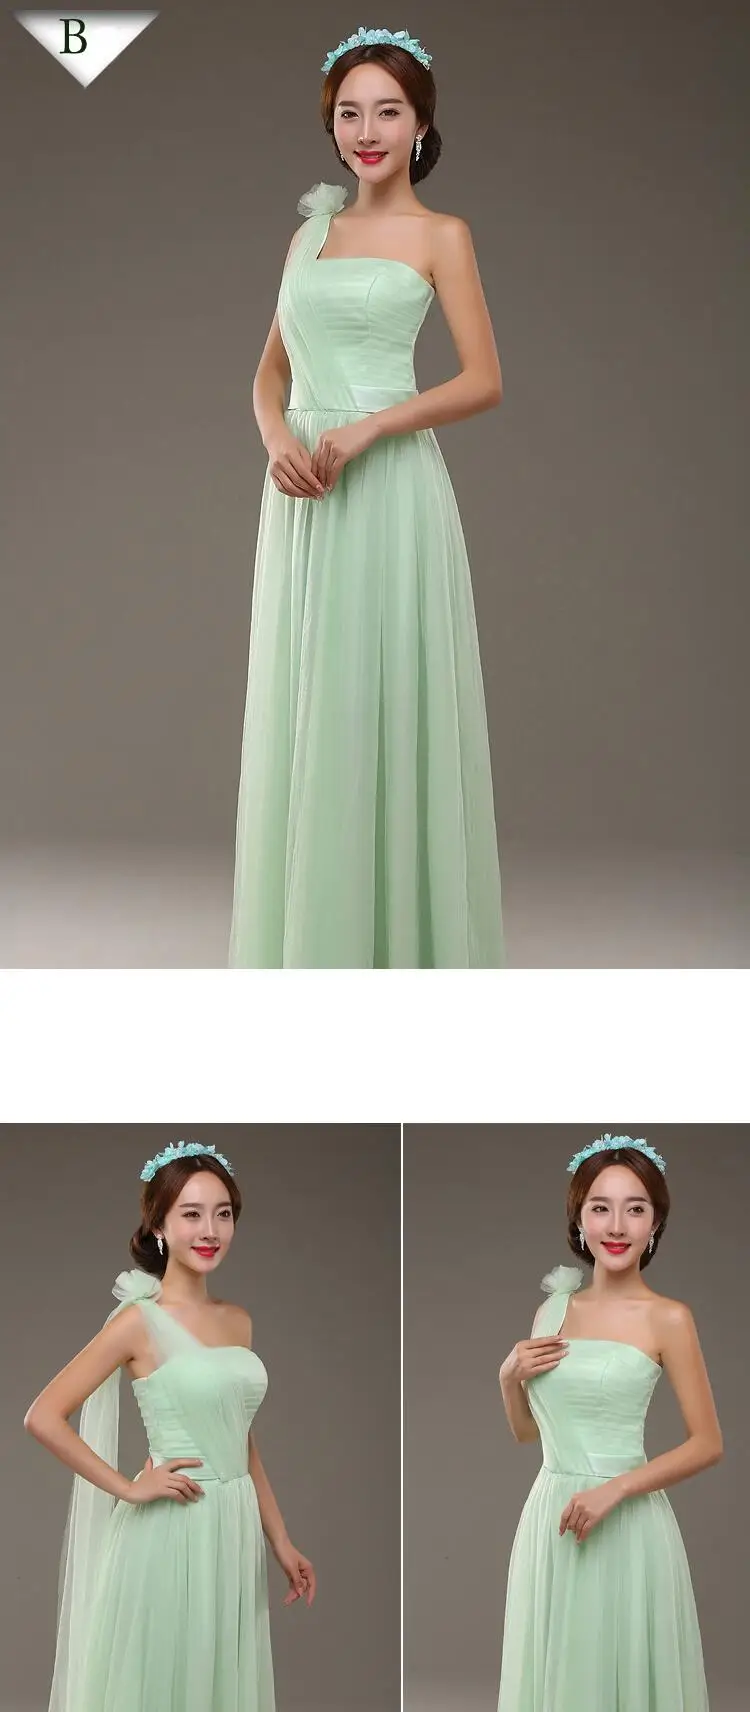 Формальные мятный, зеленый невесты Вечерние платья с v-образным вырезом для девочек платье с фатиновой юбкой длинные с бантом для